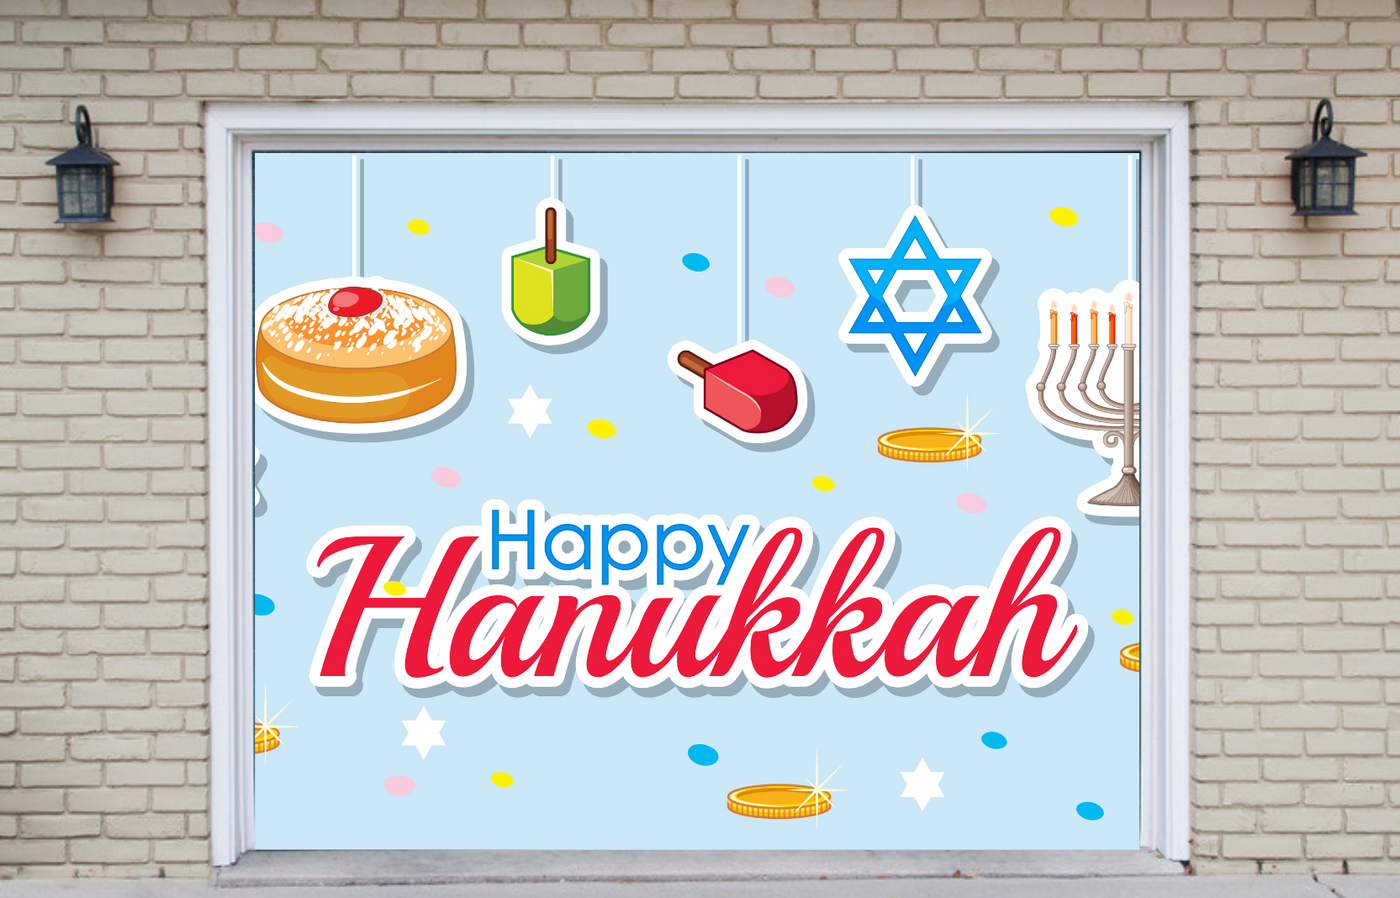 Happy Hanukkah Garage Door Banner